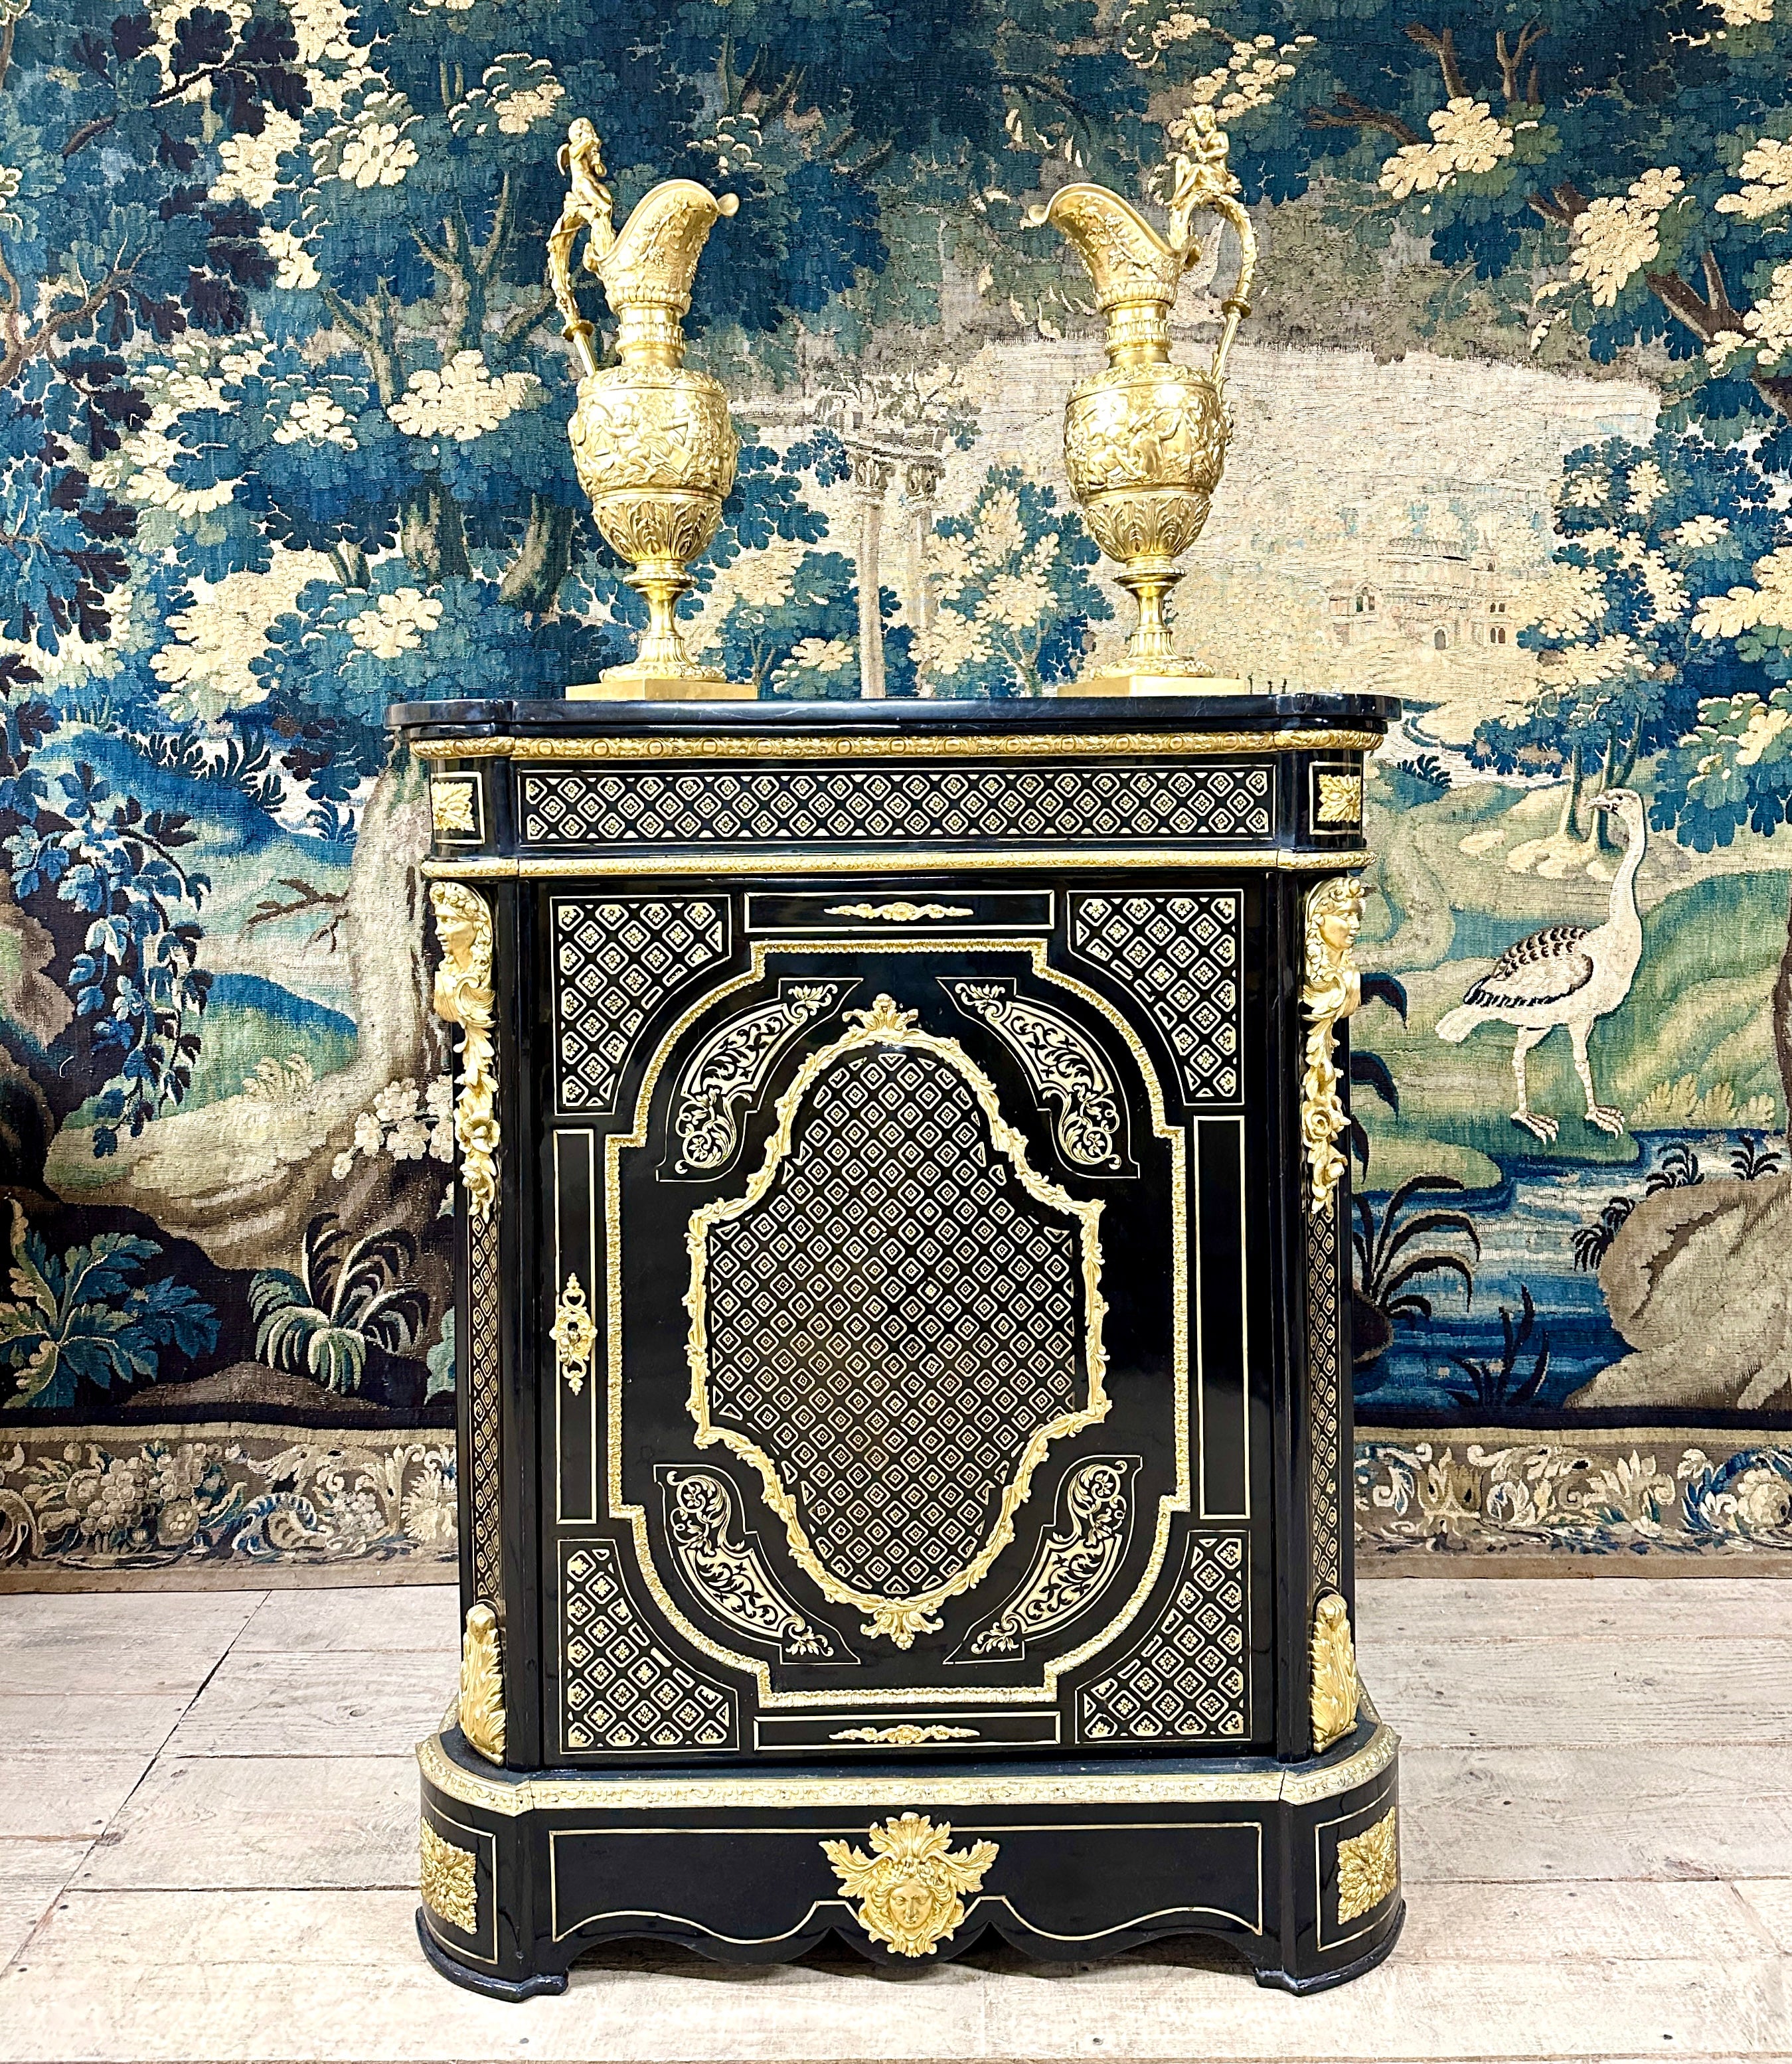 Meuble d'appui en marqueterie d'époque Napoléon III. Il est réalisé en bois noirci avec des incrustations de laiton en filet, marqueterie à la reine et marqueterie Boulle. Le panneau central est bombé et s'inscrit dans un cadre de bronze ciselé et